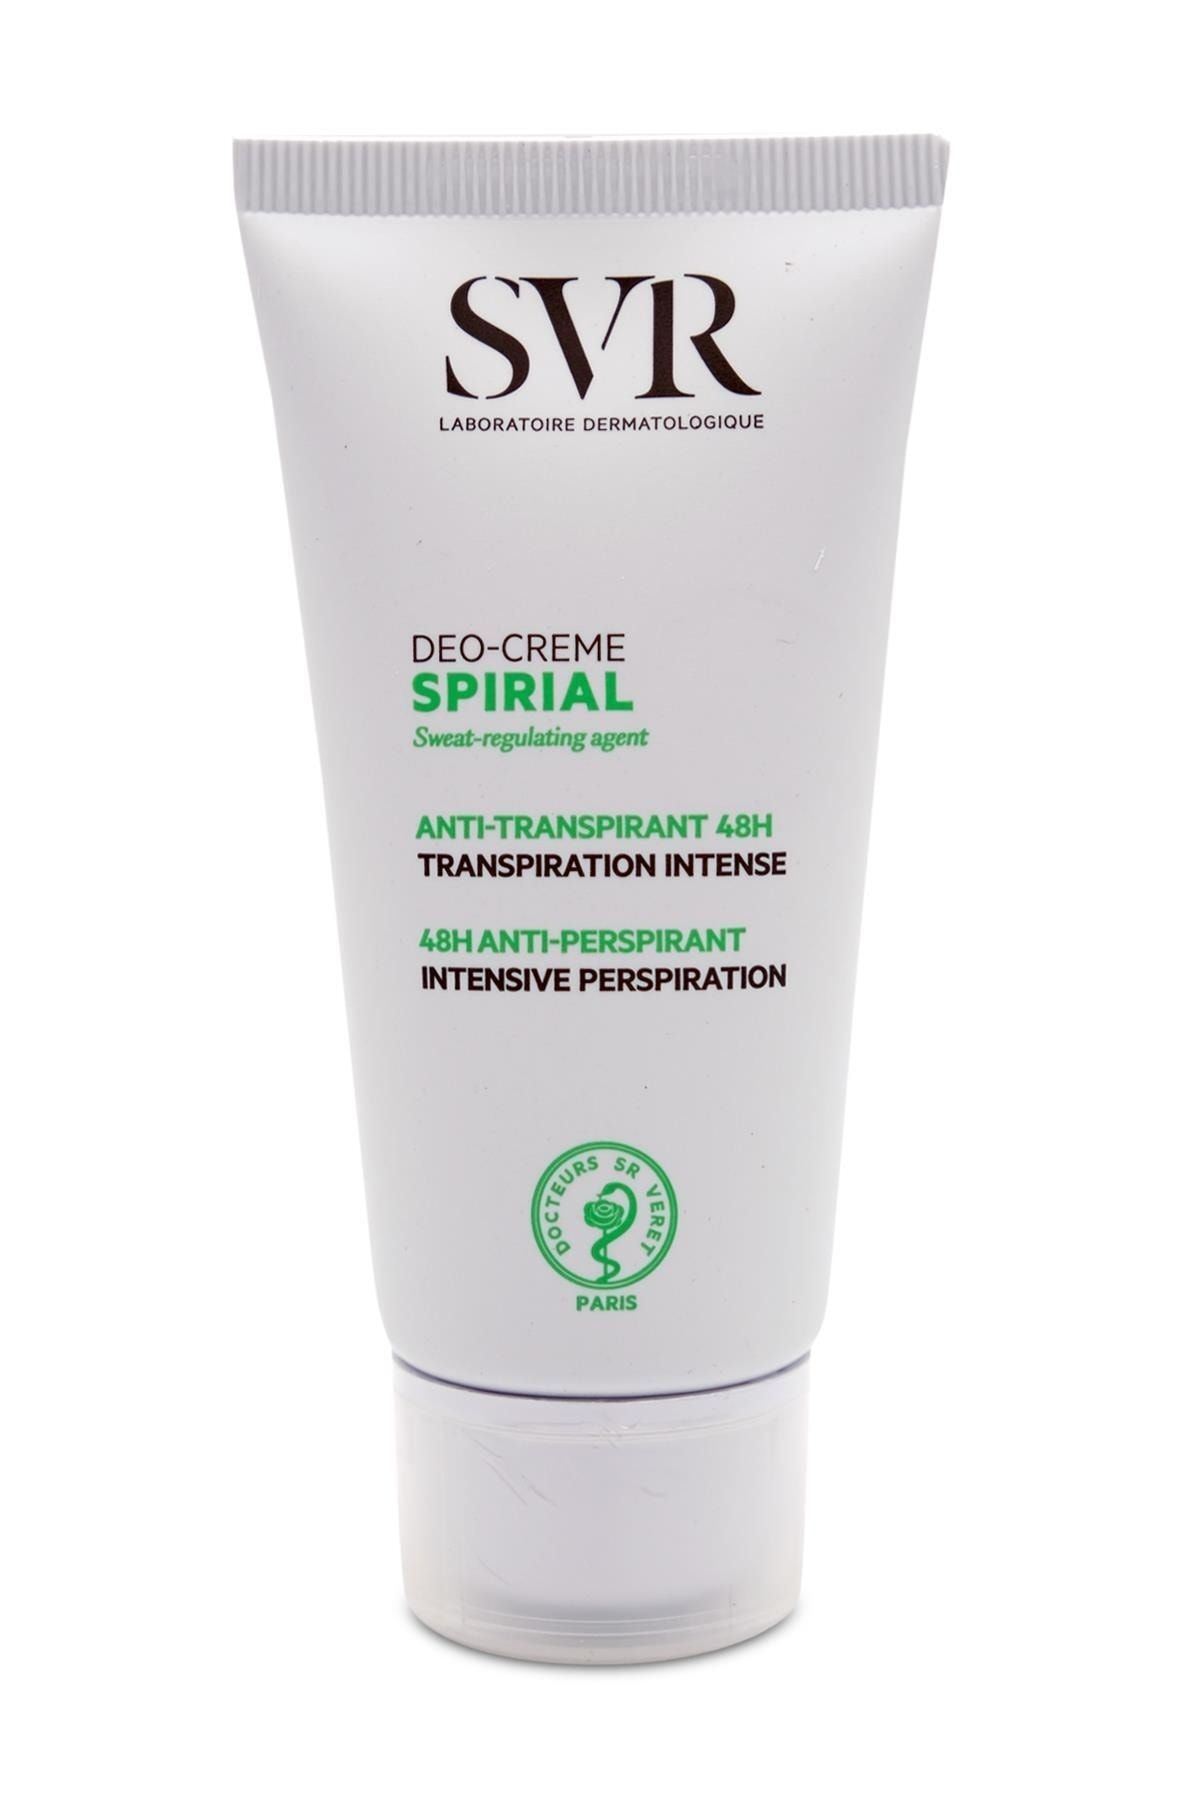 SVR Spirial Deodorant Anti-perspiriant Cream 50 ml